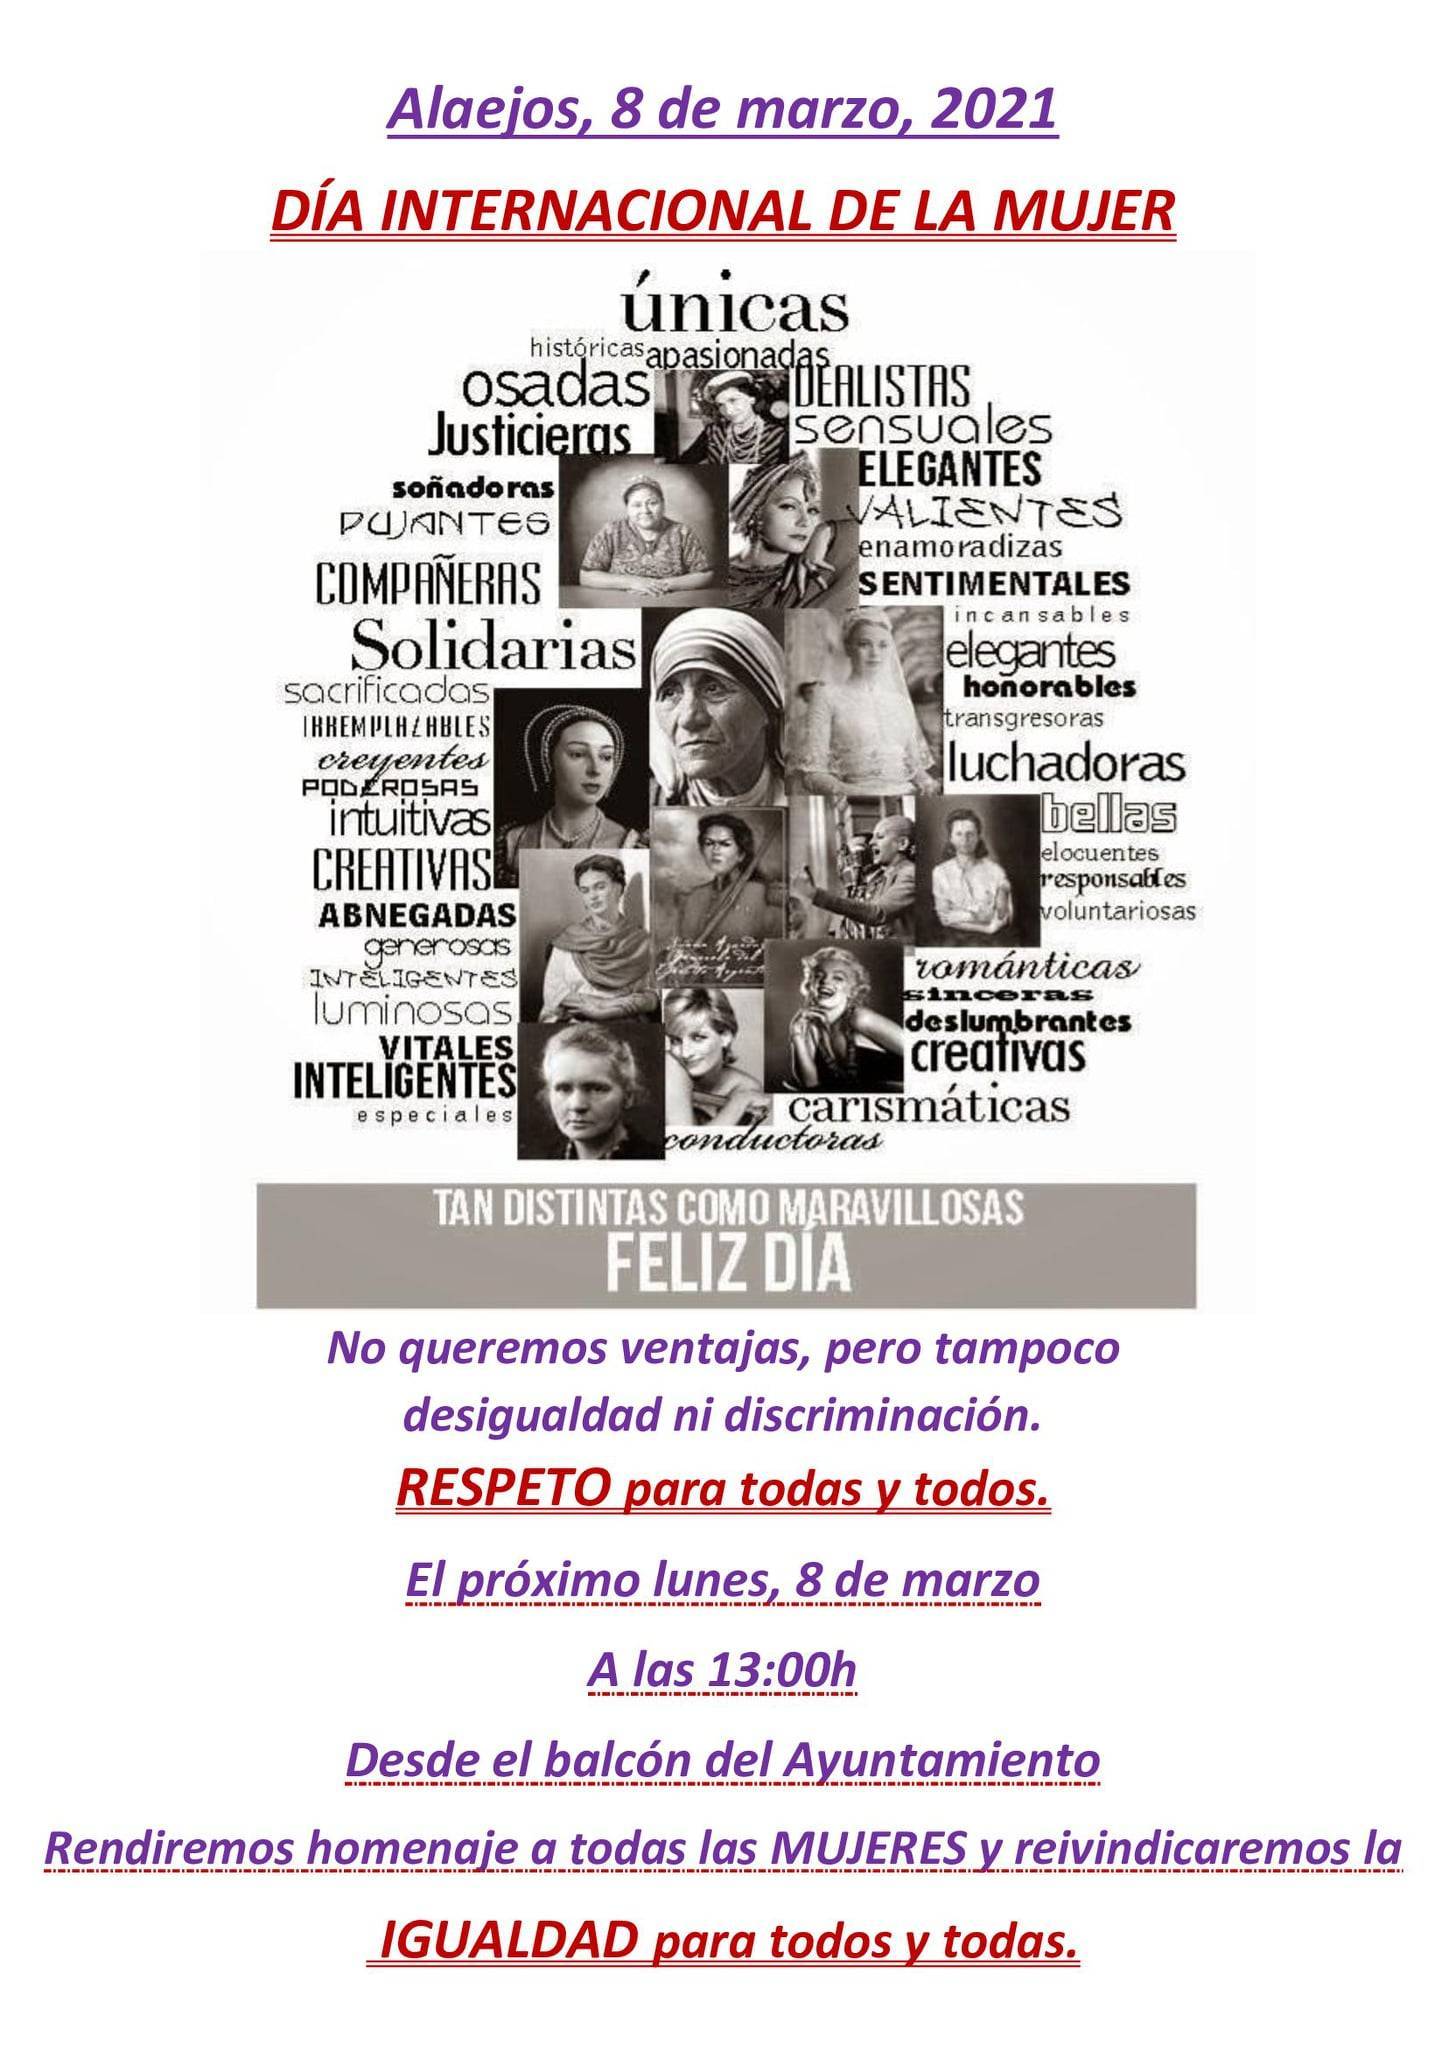 Día Internacional de la Mujer (2021) - Alaejos (Valladolid)